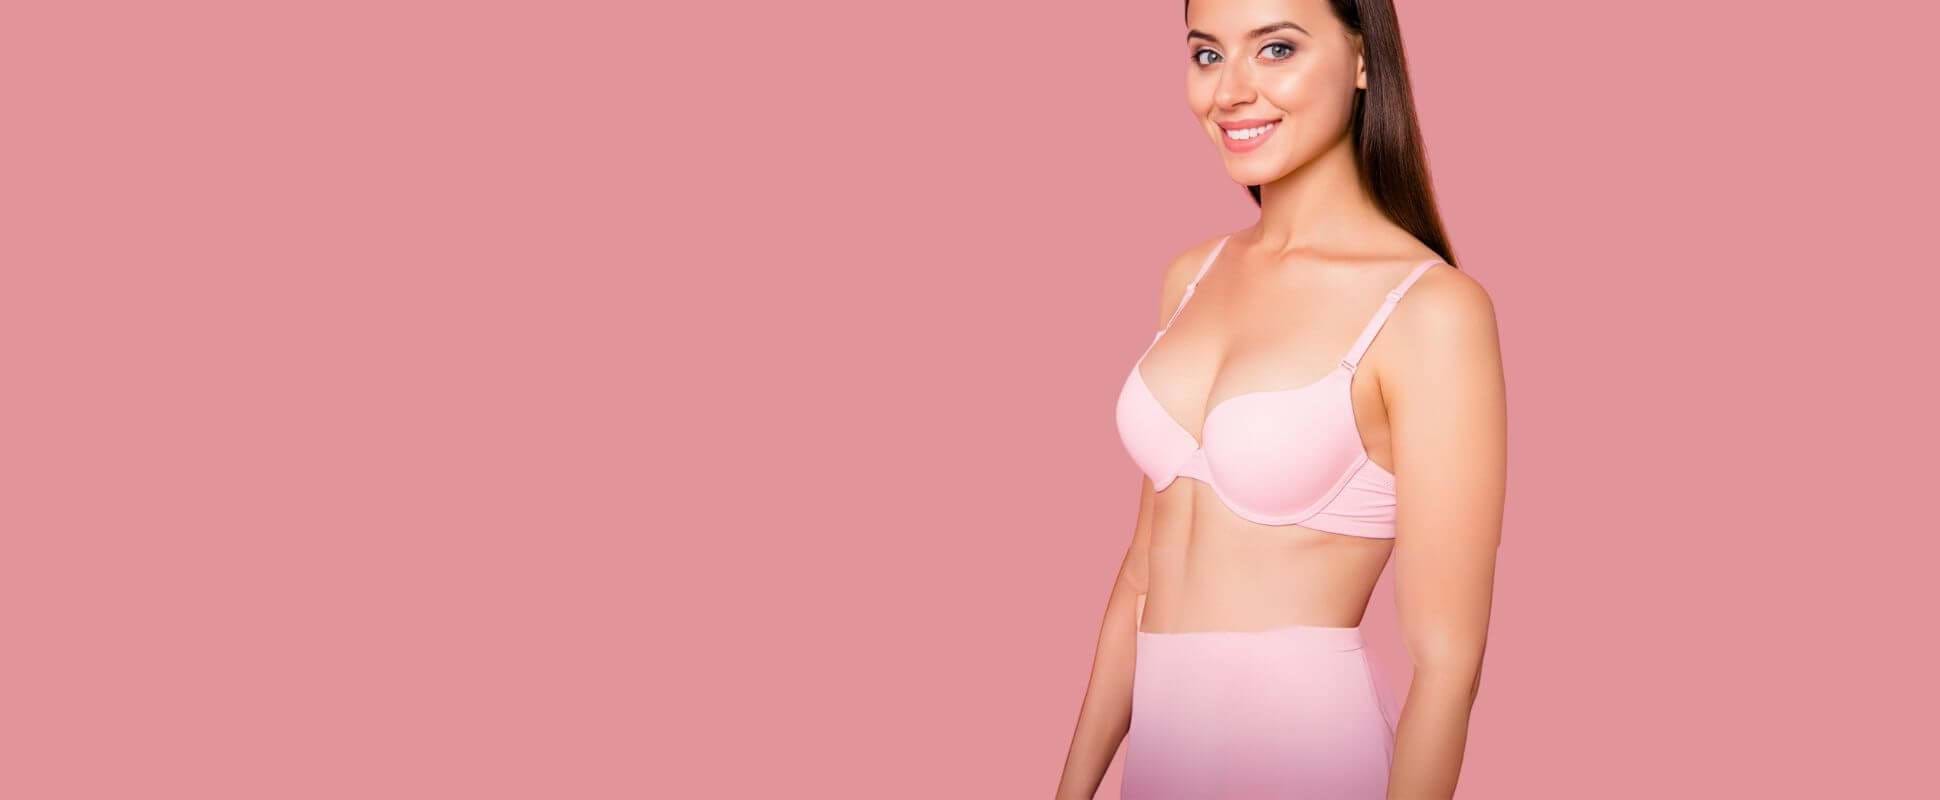 MIBIS-Technik für Brustvergrößerungen auch in Spanien verfügbar